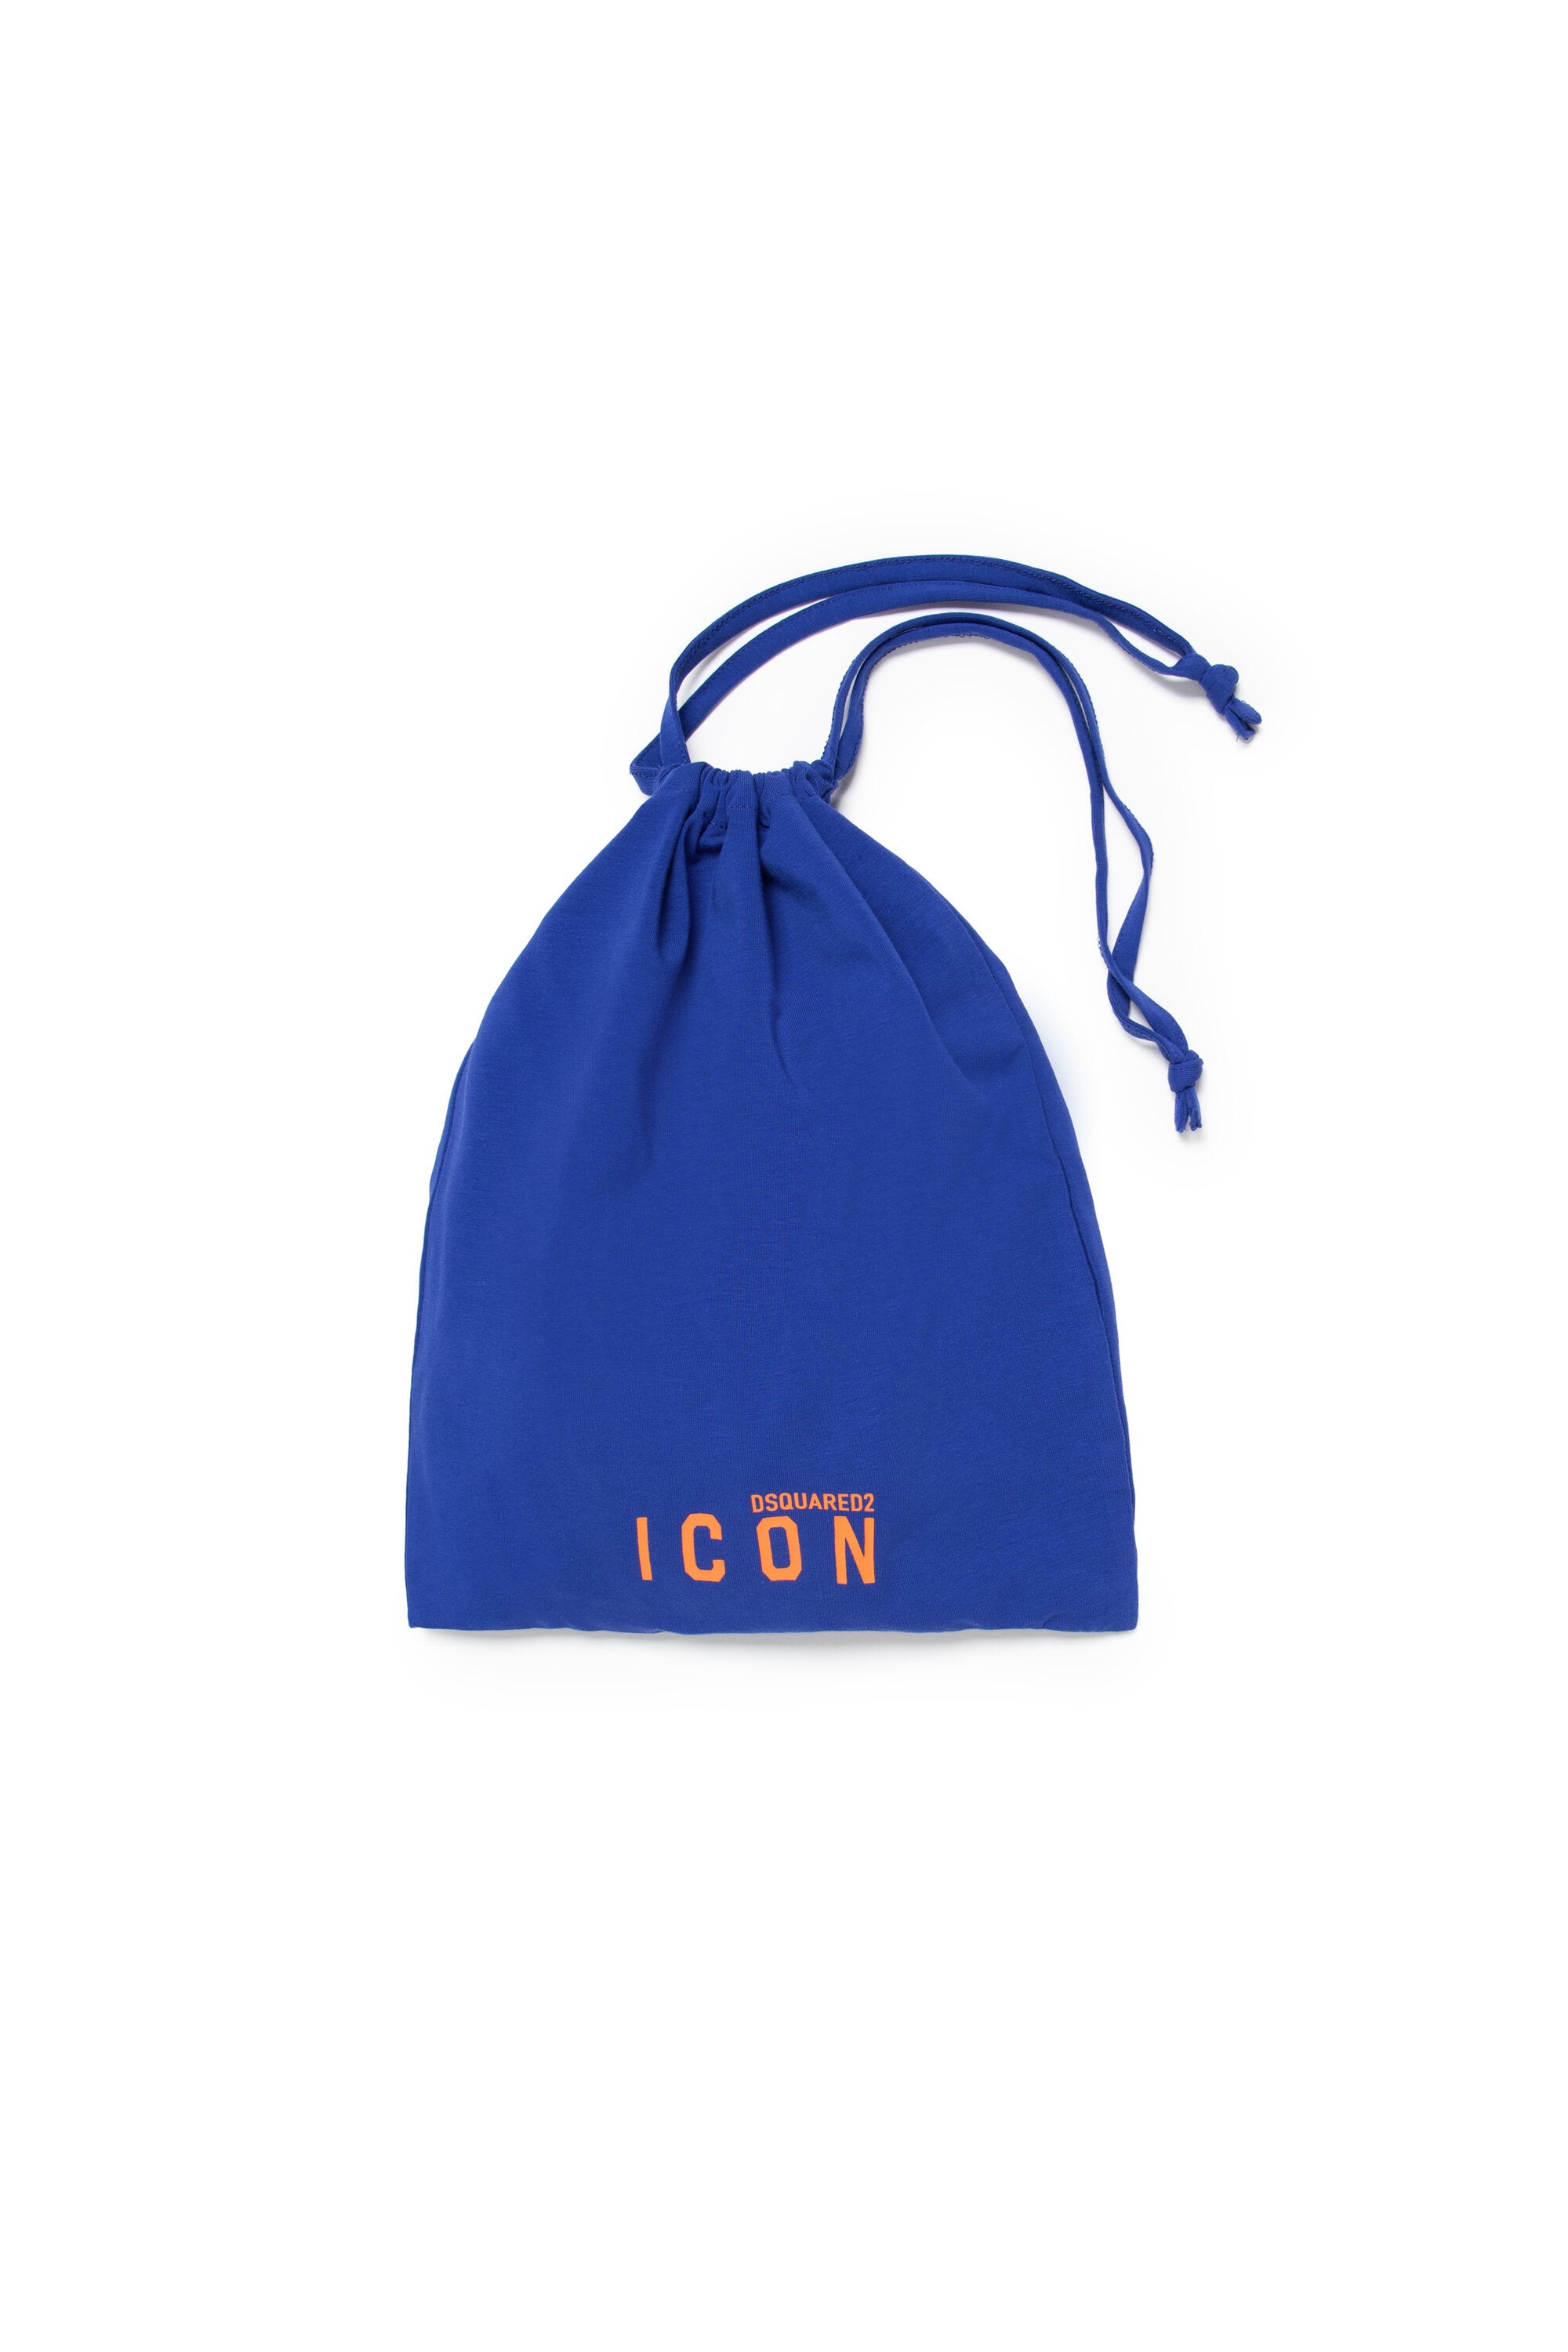 Short jersey pajamas with ICON logo